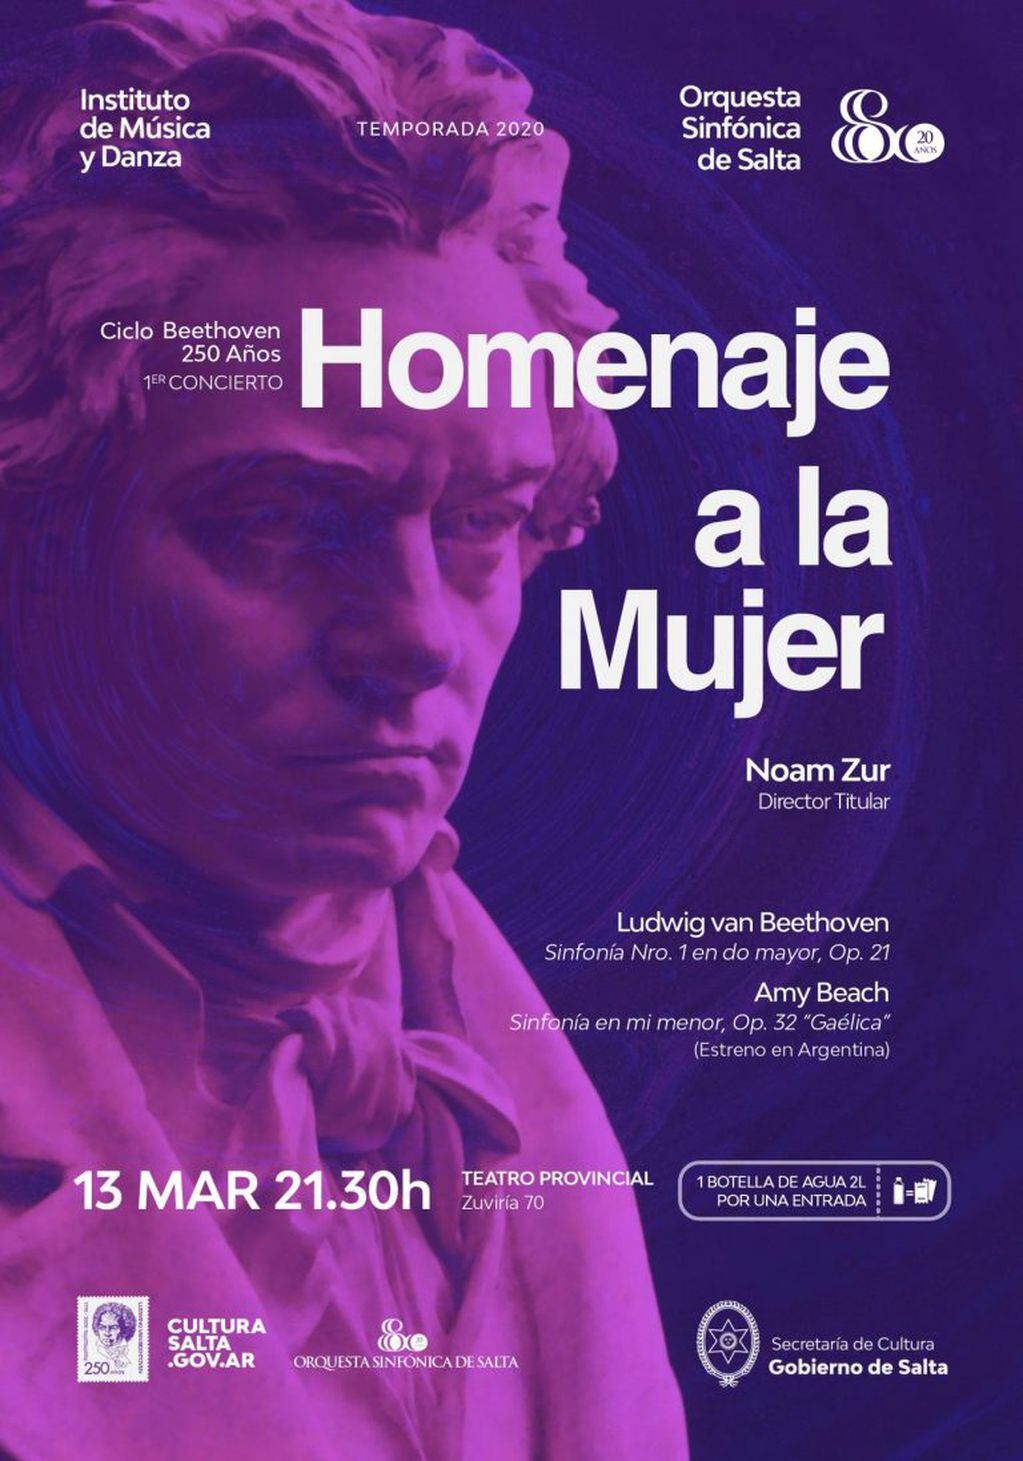 Concierto Homenaje a la Mujer de la Orquesta Sinfónica de Salta (Facebook Teatro Provincial de Salta)